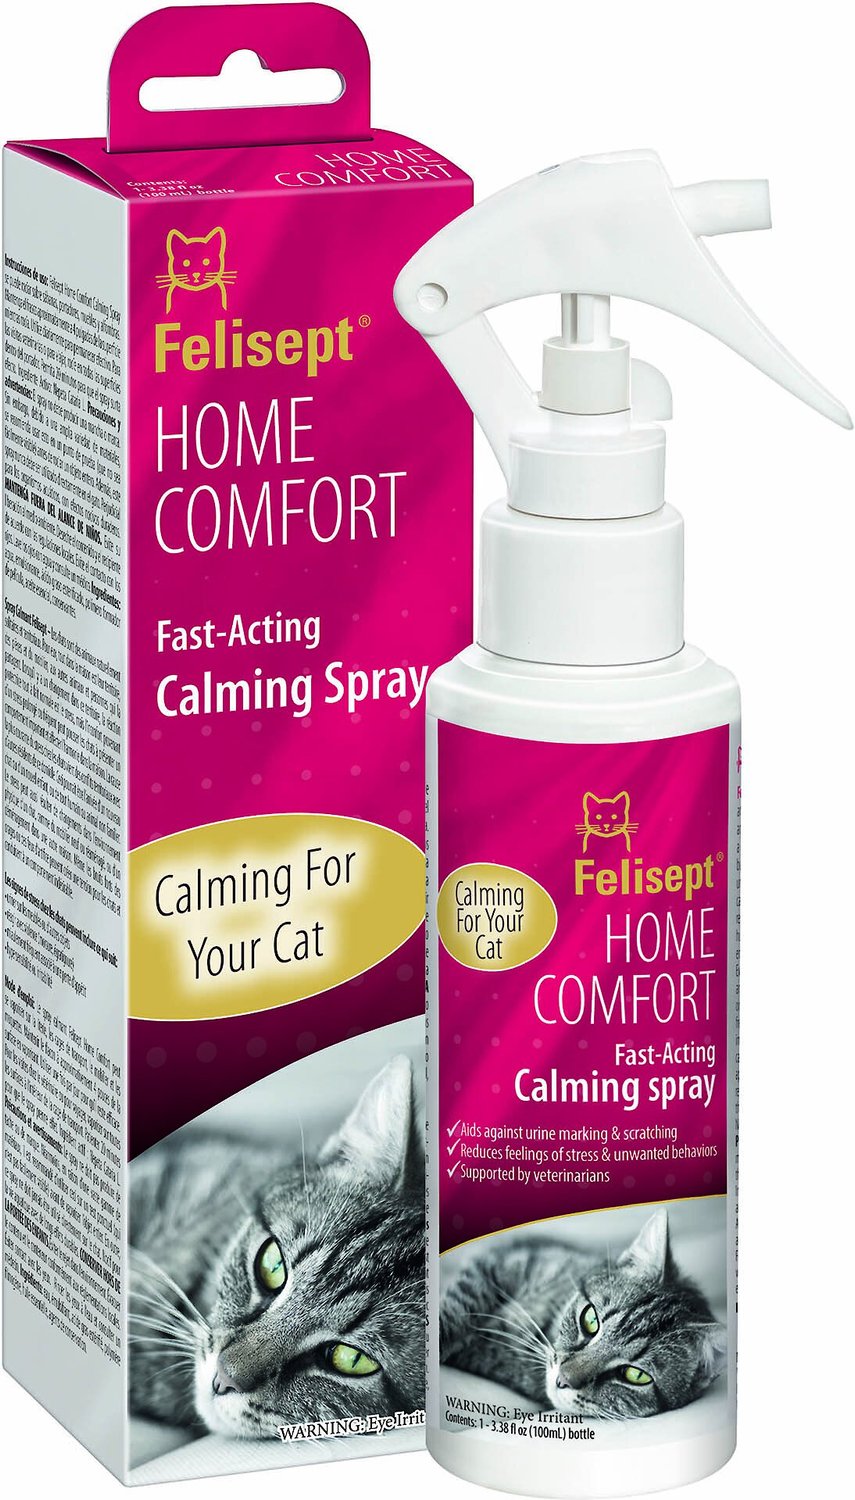 FELISEPT Home Comfort Cat Calming Spray, 3.38oz bottle